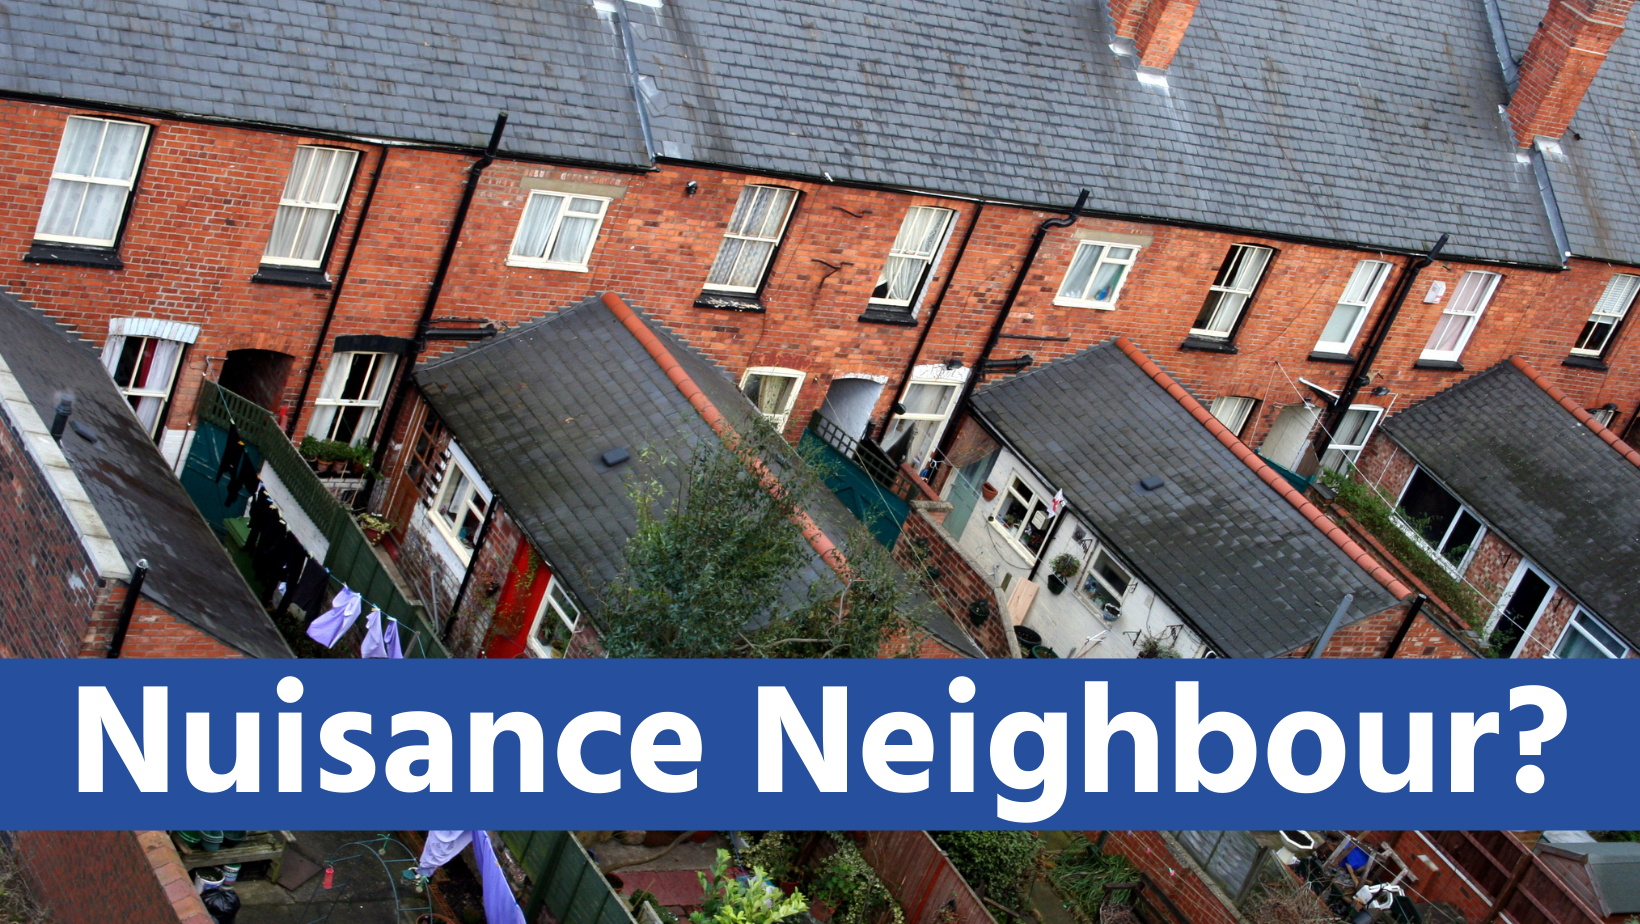 Nuisance Neighbour image